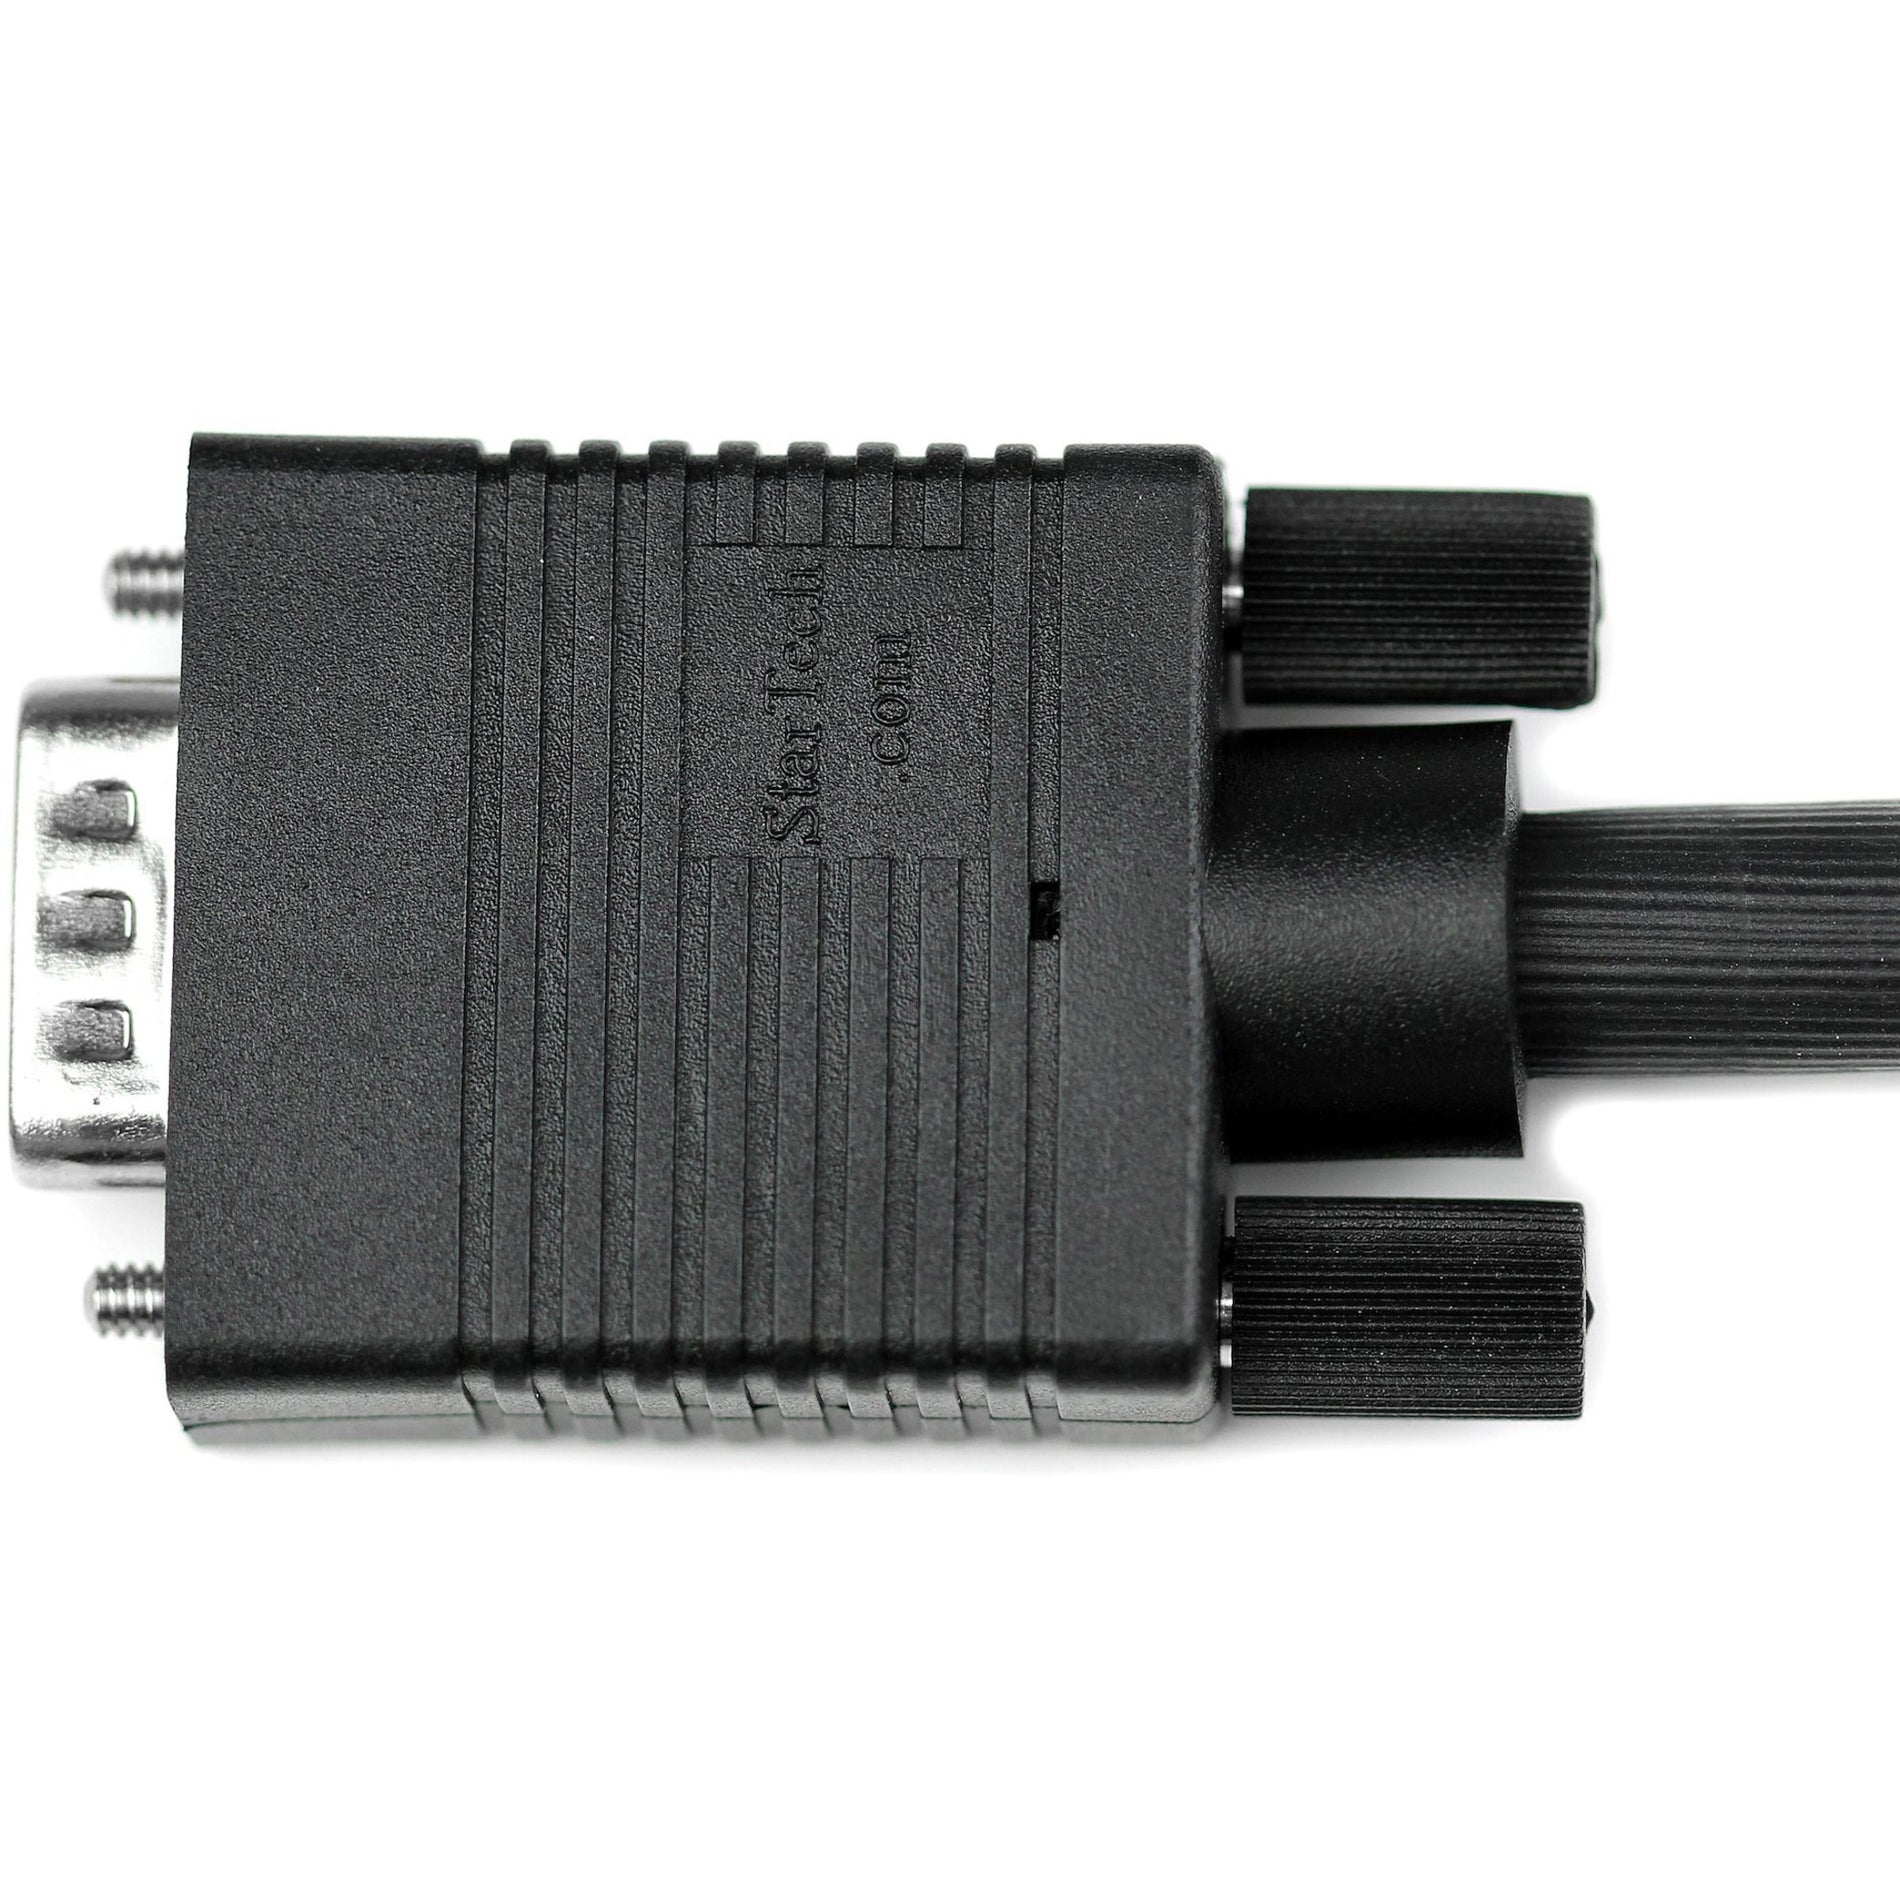 StarTech.com MXT105MMHQ15 ft Coax Cable VGA de Alta Resolución para Monitor - HD15 Macho/Macho Pantalla Cristalina Protección EMI